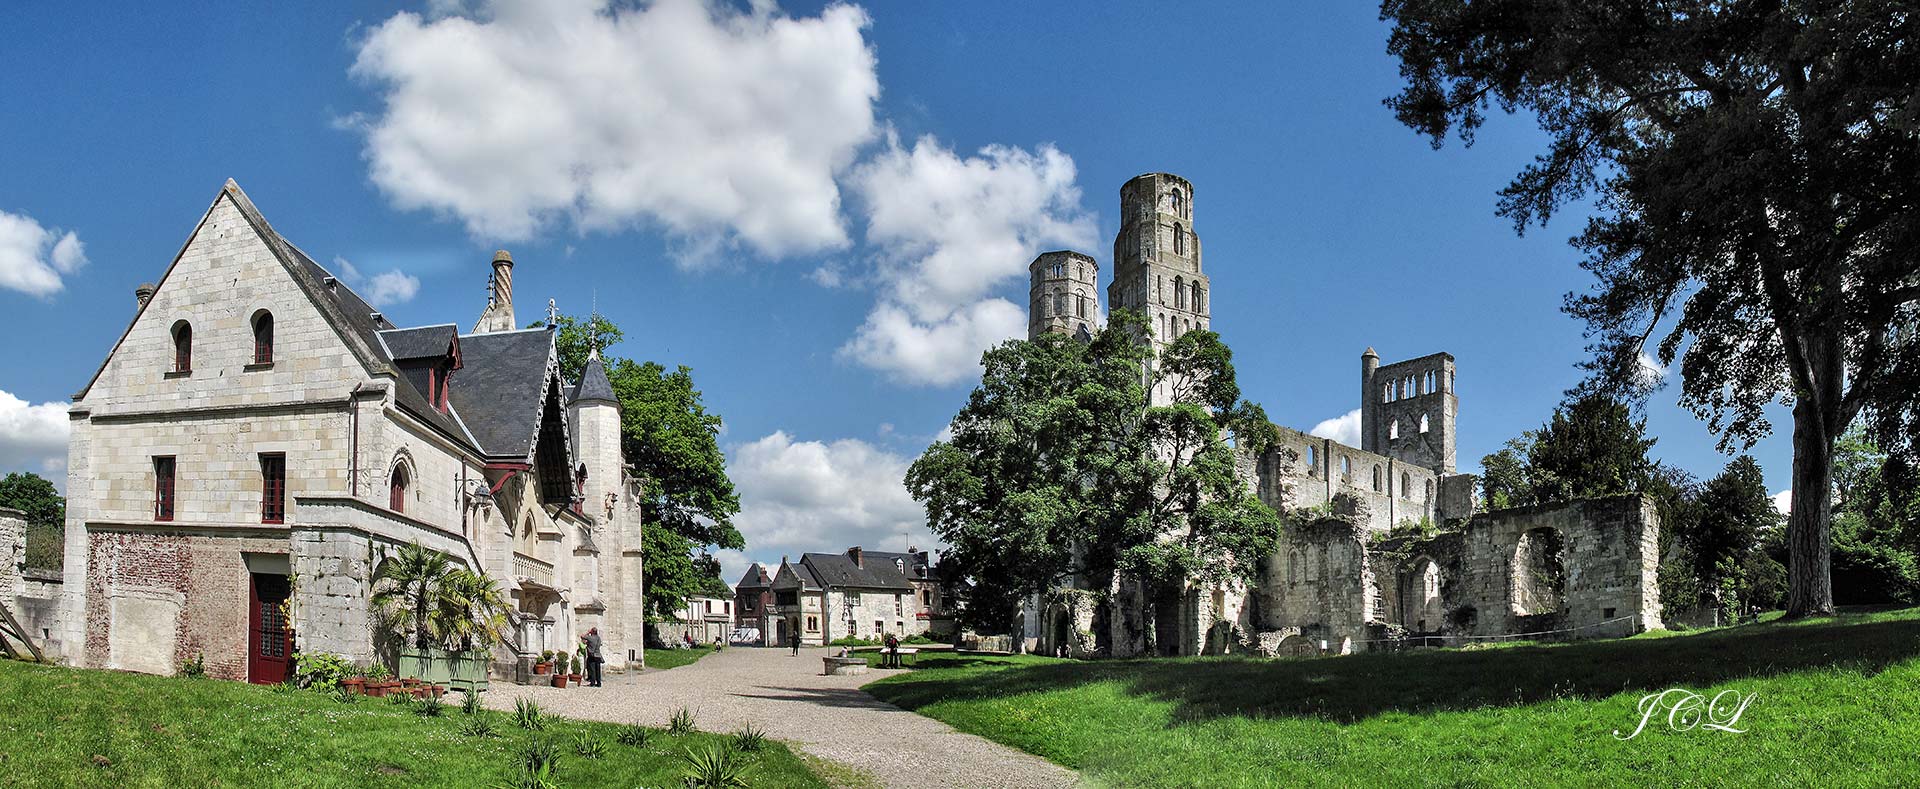 L'abbaye Saint-Pierre de Jumièges est une ancienne abbaye bénédictine située dans le département de la Seine-Maritime.